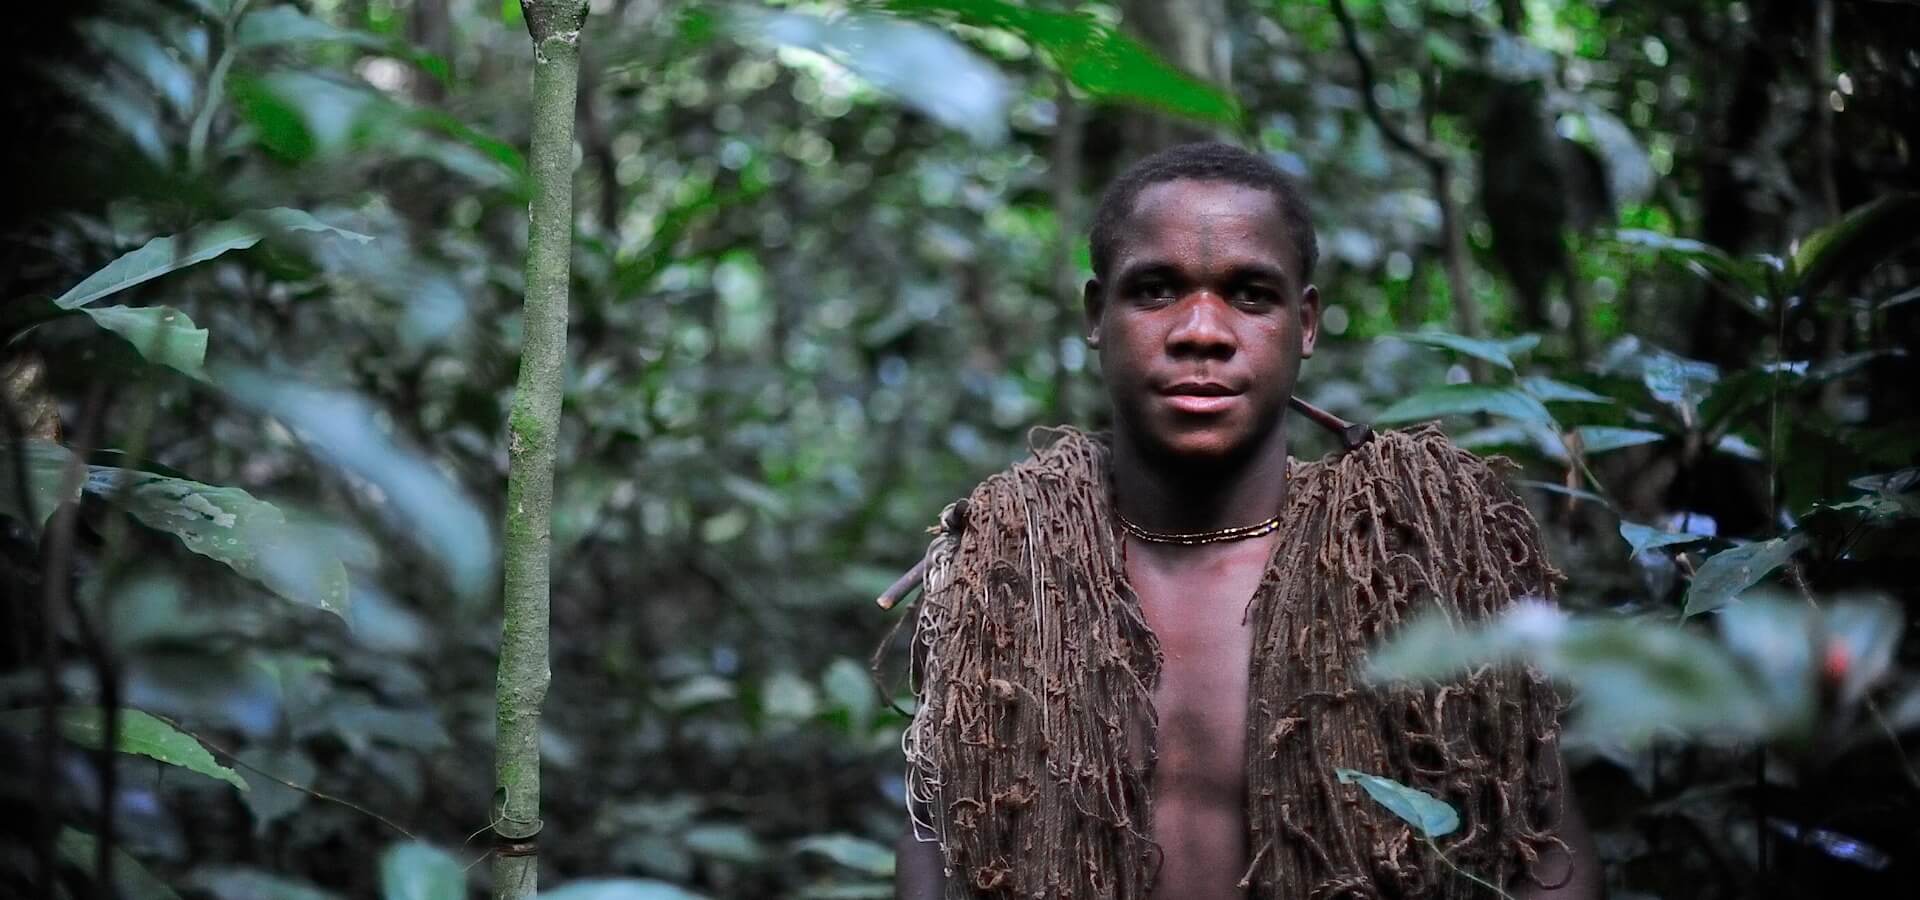 Retrato homem afrodescendente no bosque